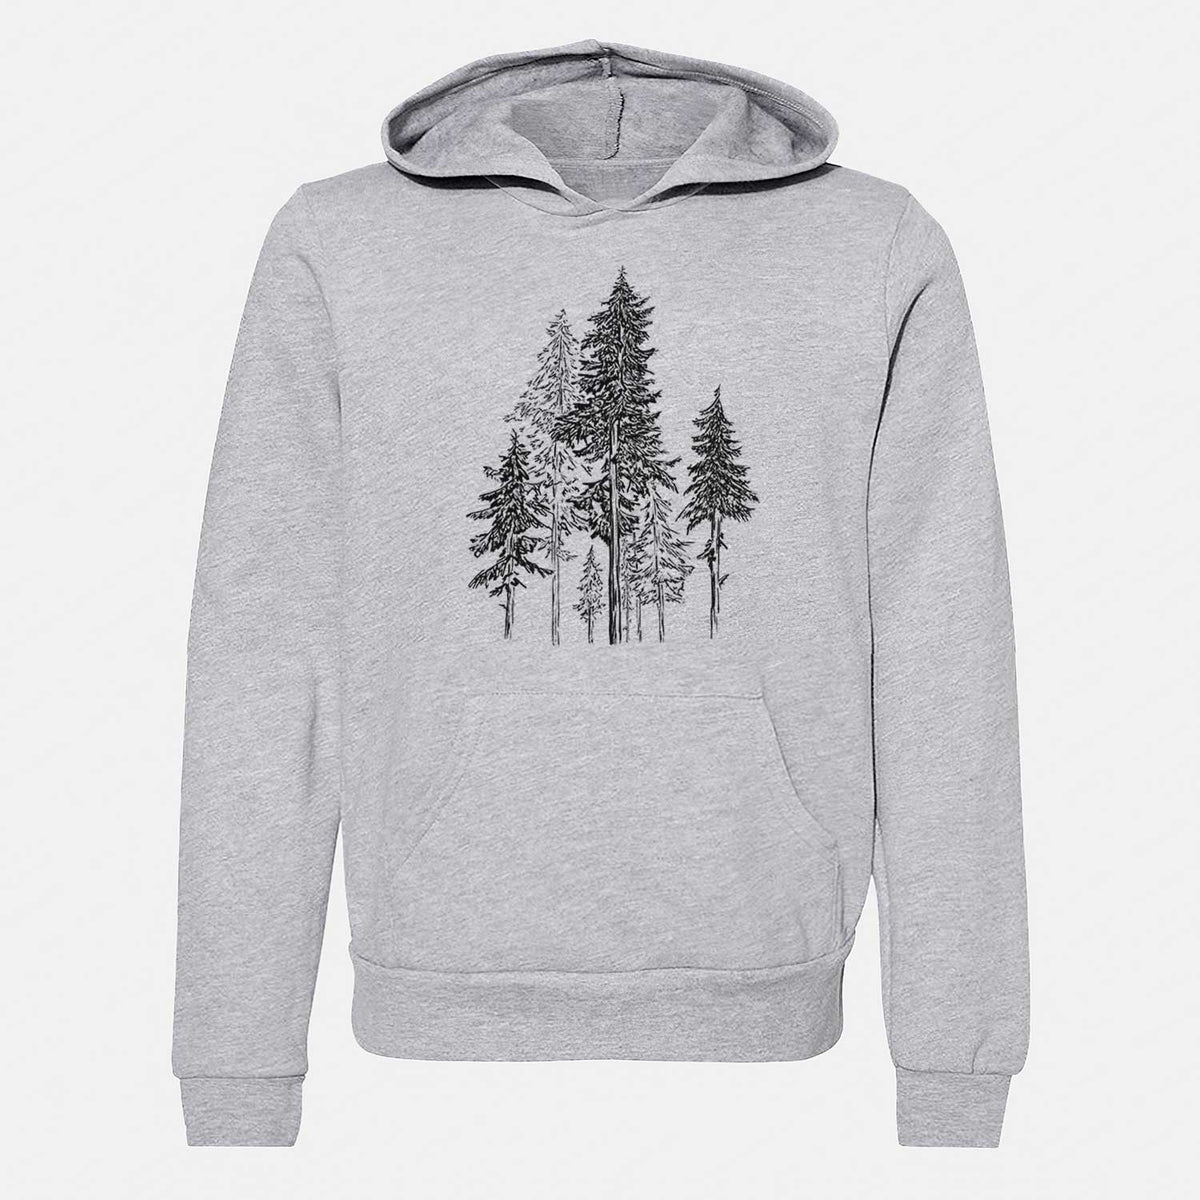 Hemlock Forest - Youth Hoodie Sweatshirt